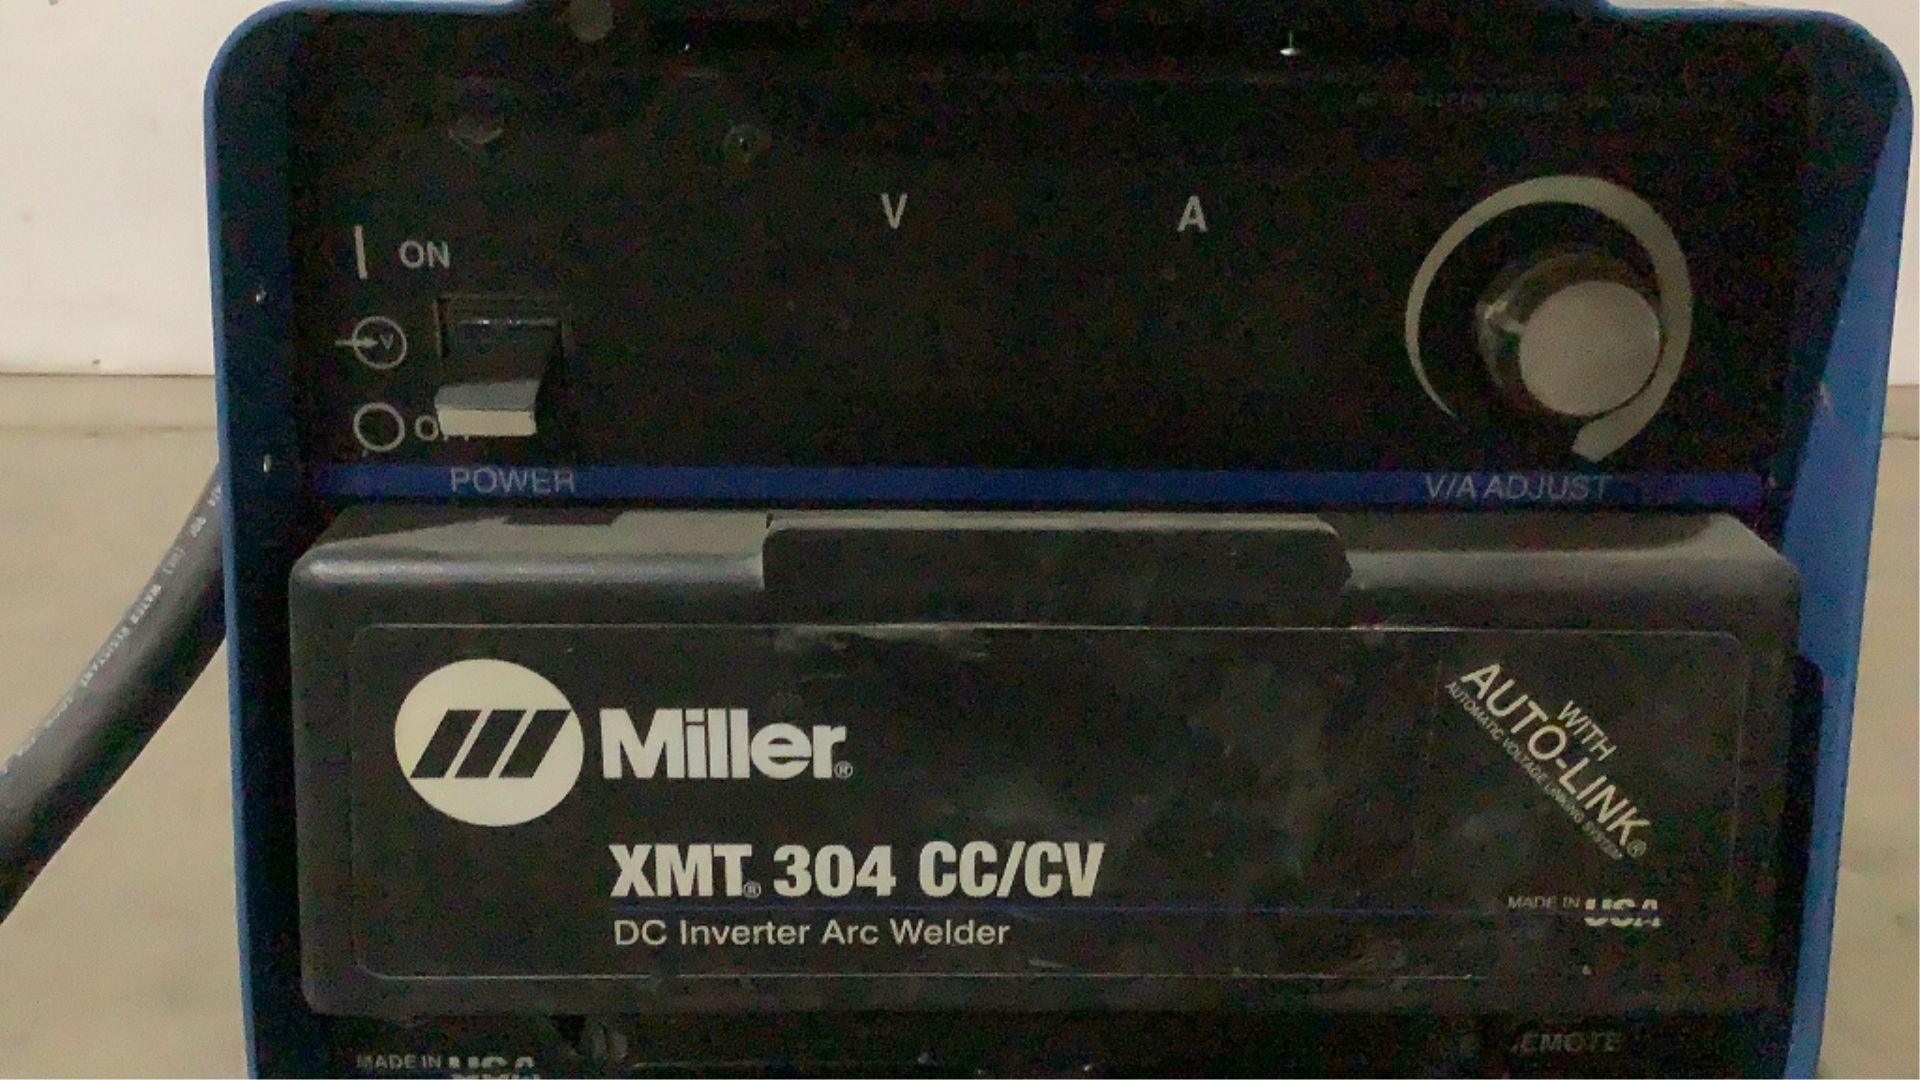 Miller DC Inverter Arc Welder XMT 304 cc/cv - Image 7 of 18